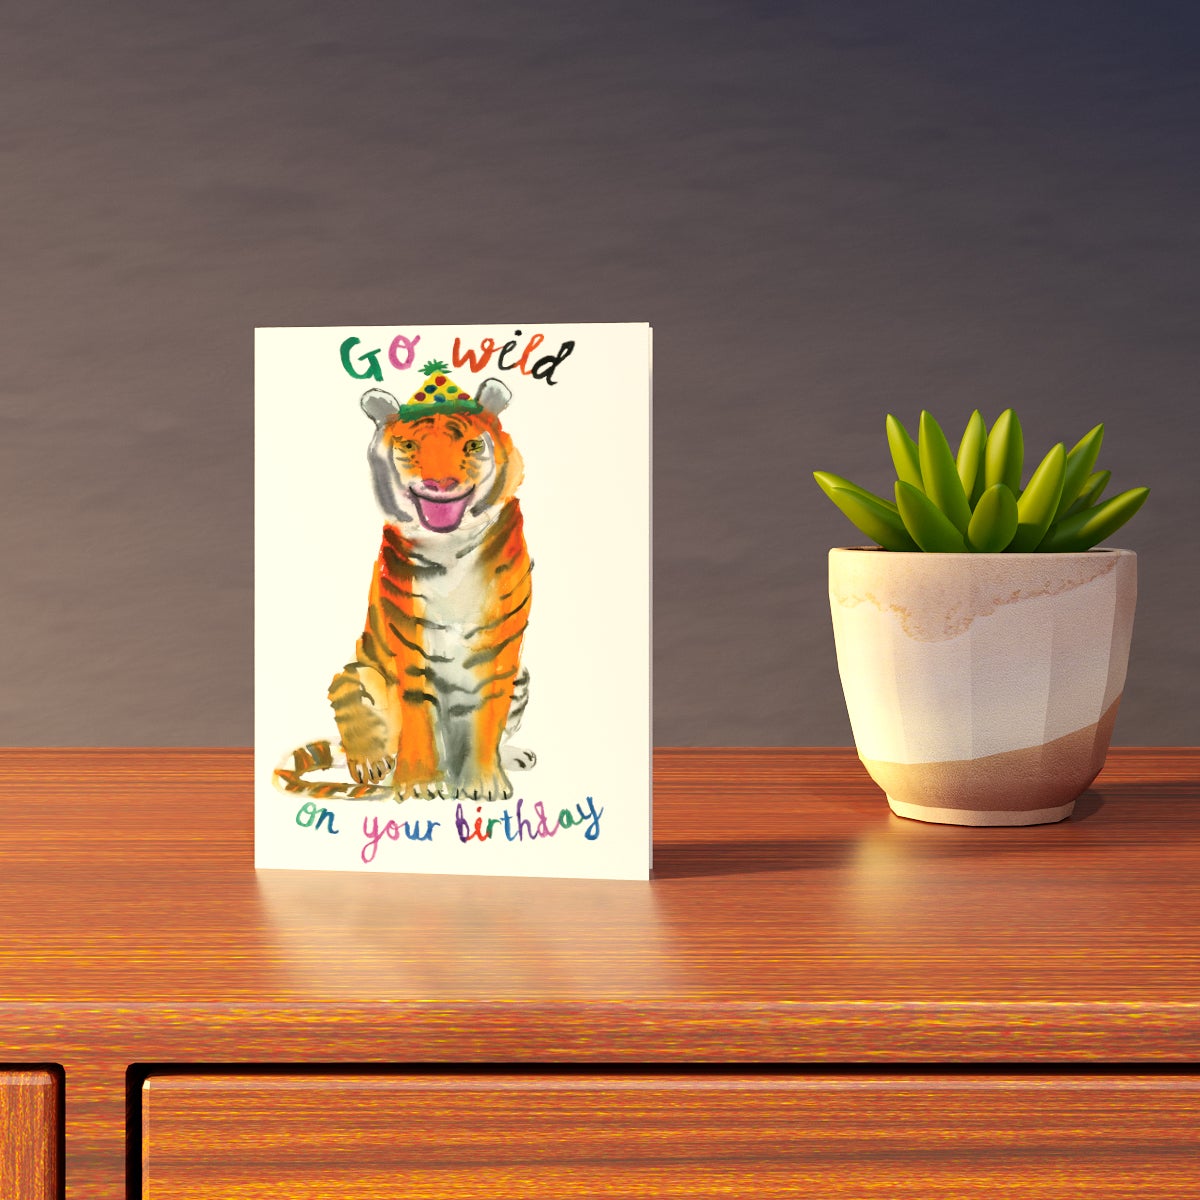 Go Wild Tiger Birthday Card